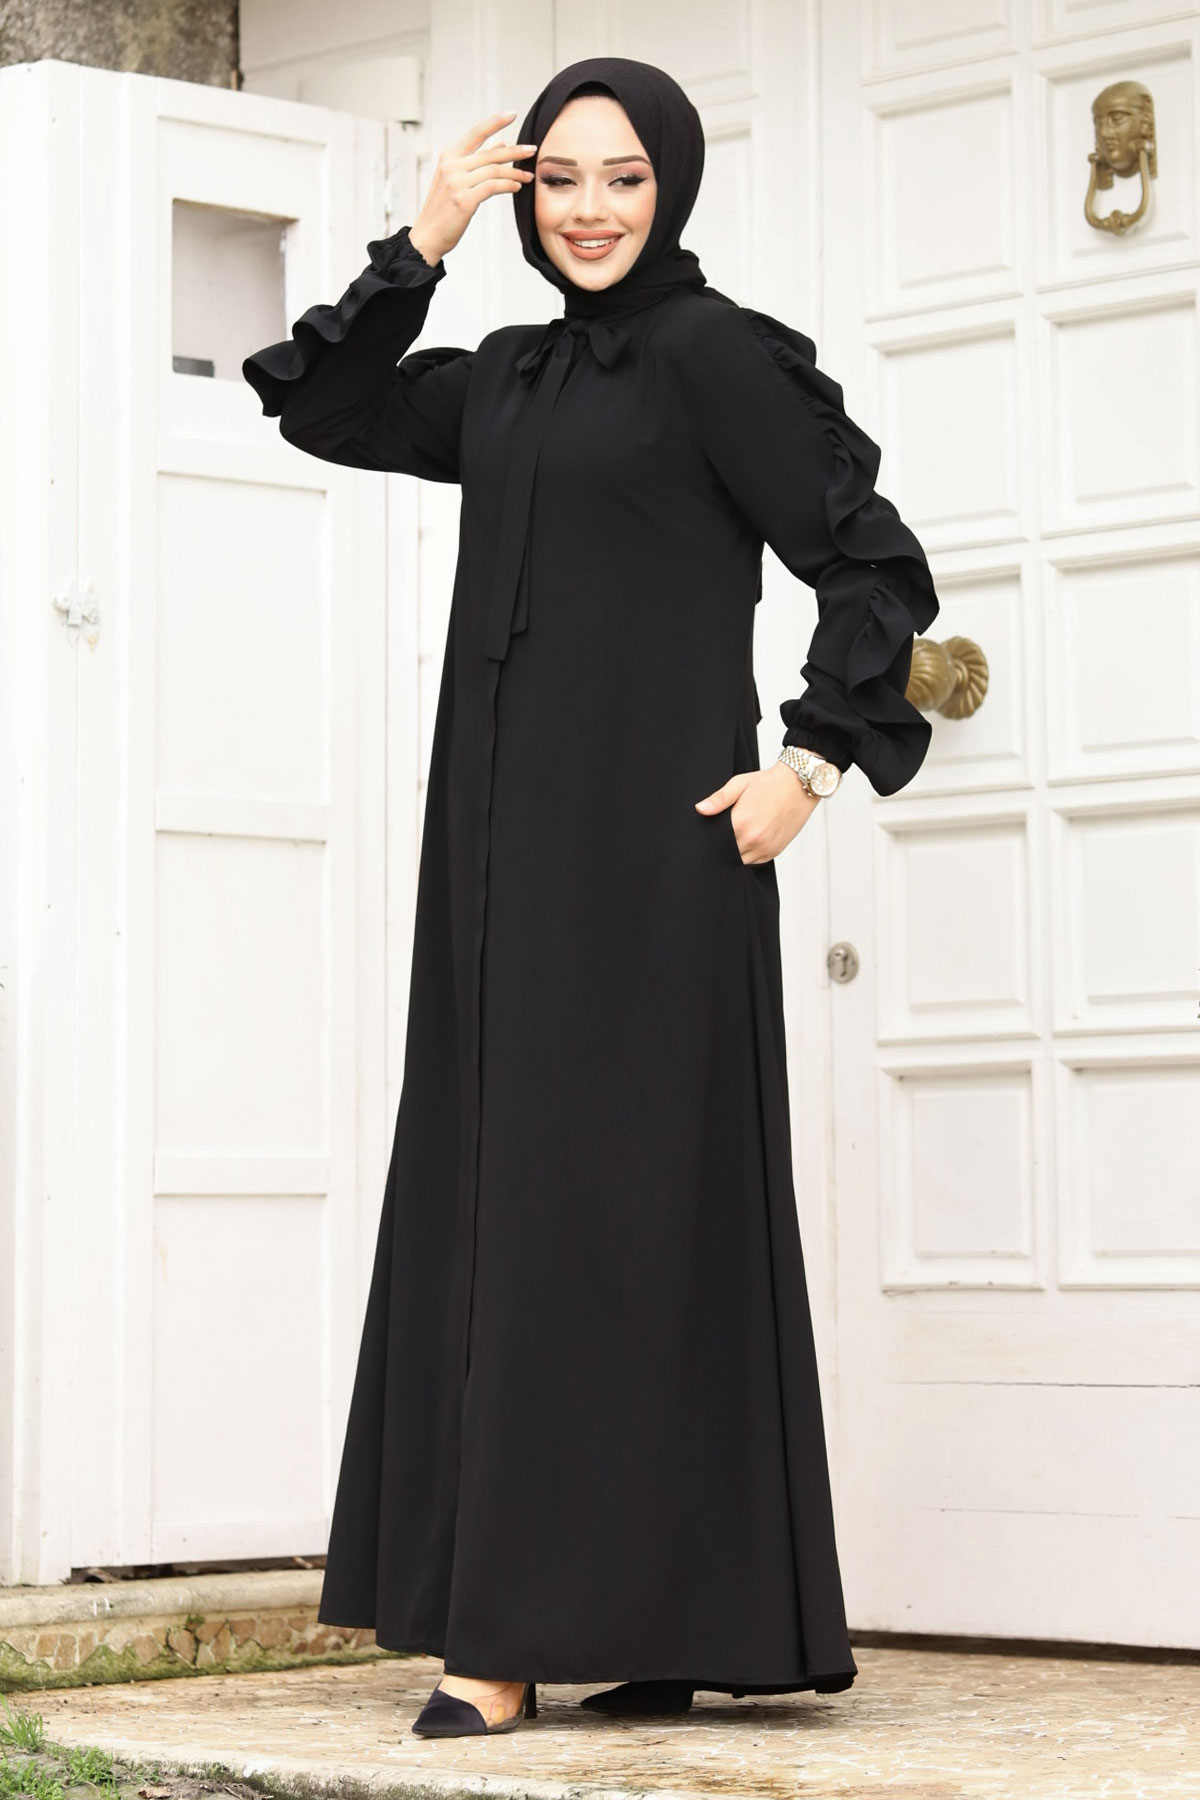 women dressing in islam